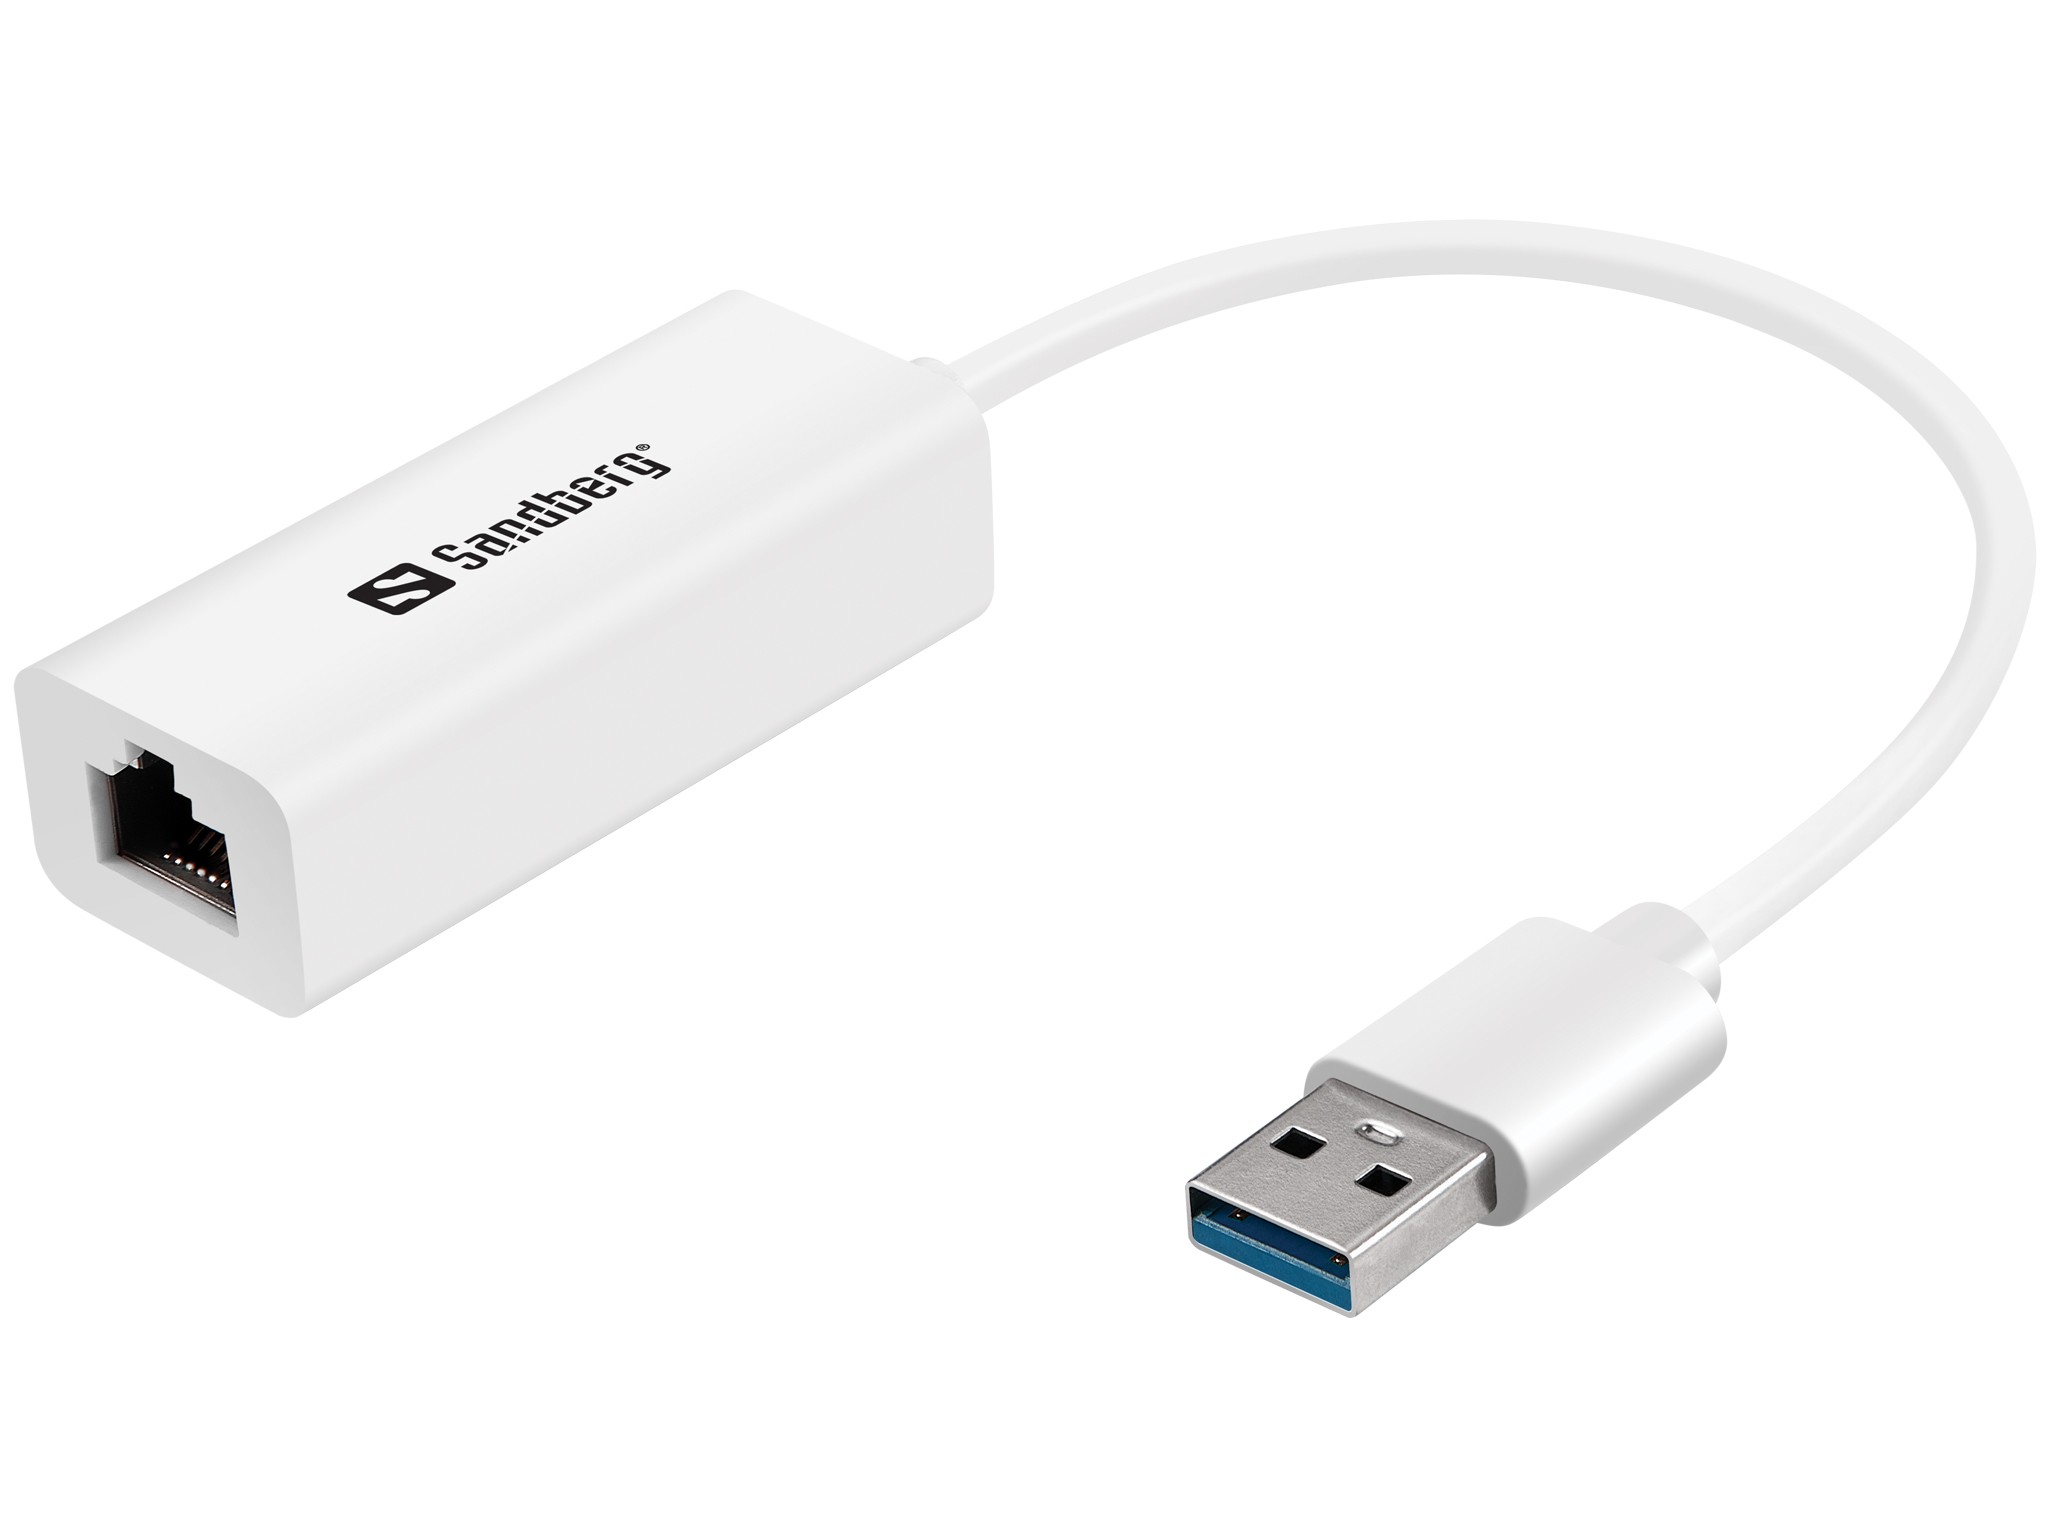 Sandberg USB 3.0 Gigabit Network Adapter - 133-90